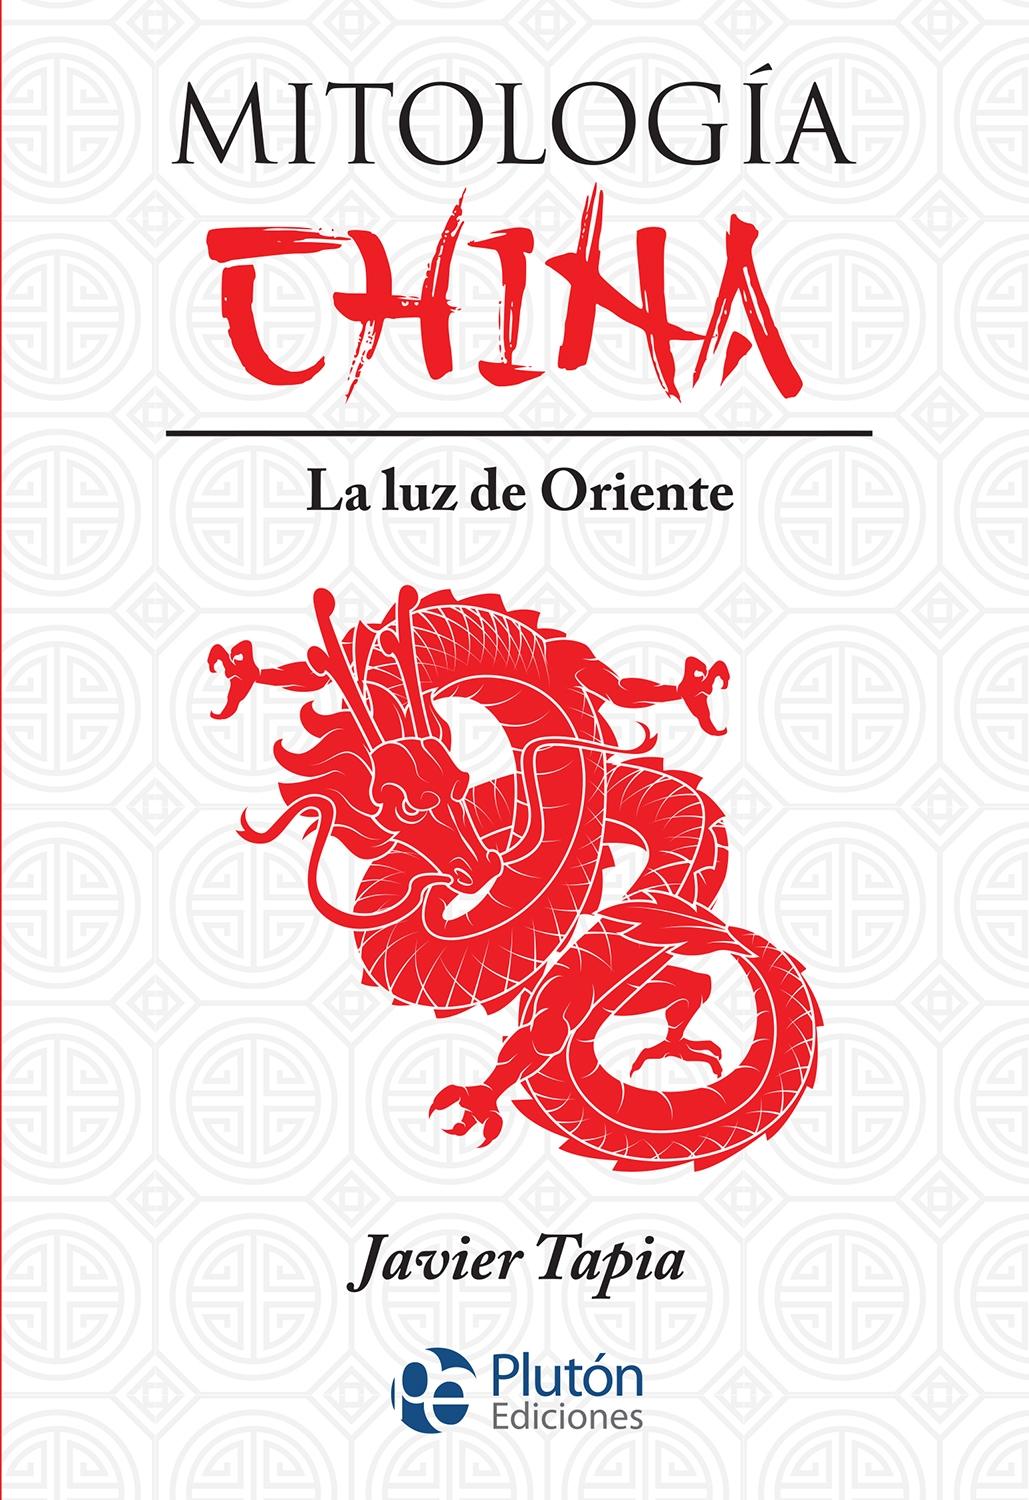 Mitología China "La luz de Oriente"